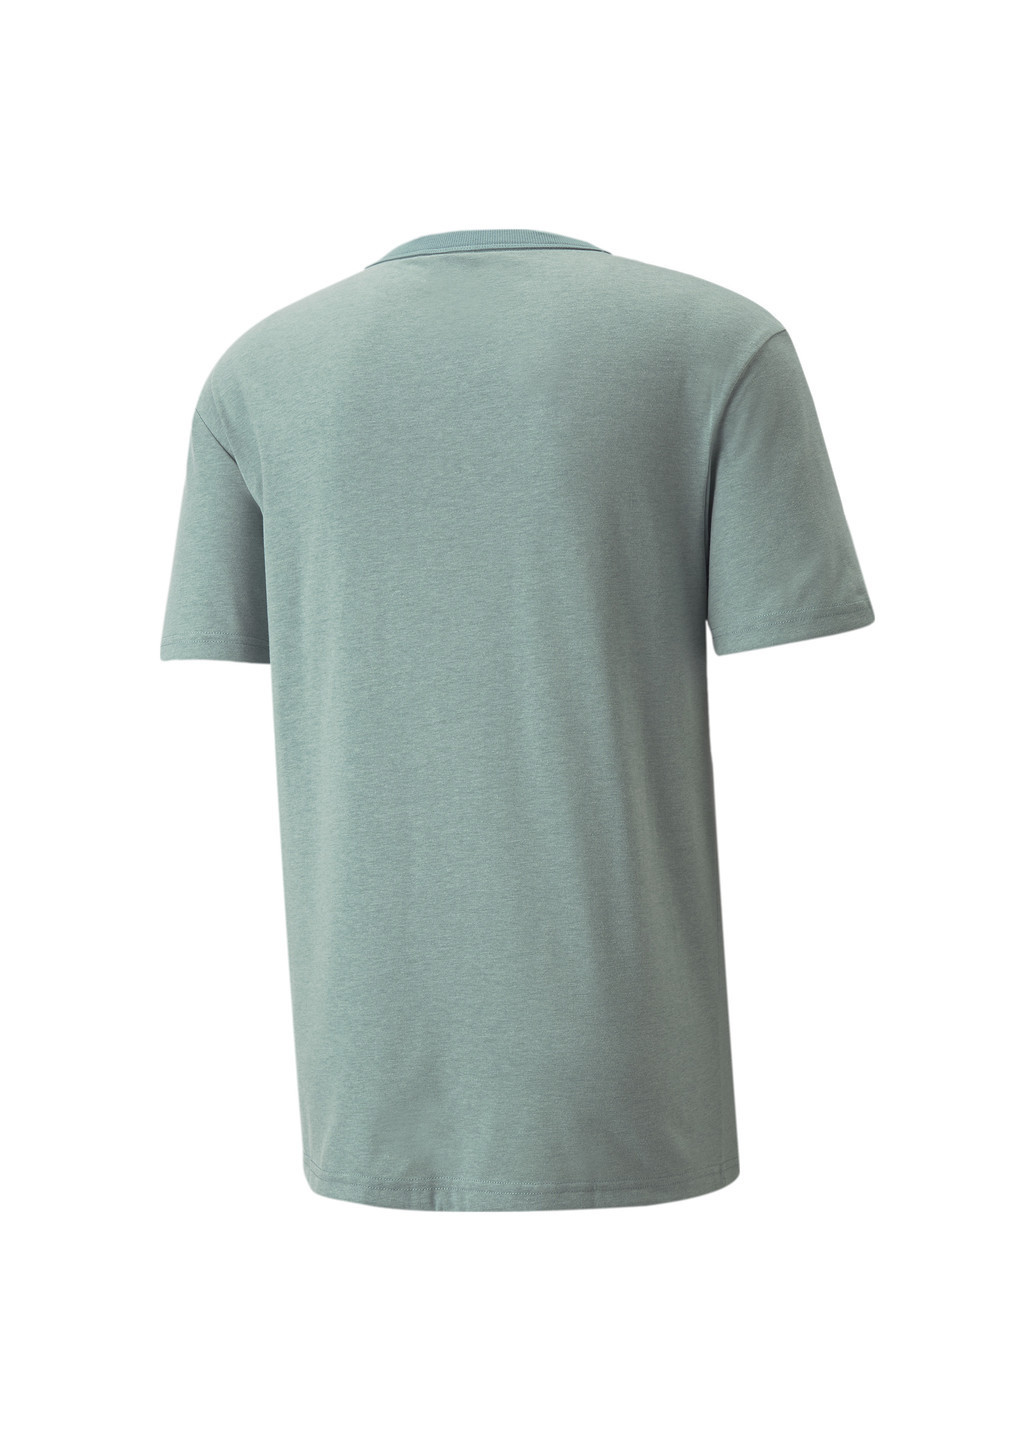 Синя футболка classics heather men's tee Puma